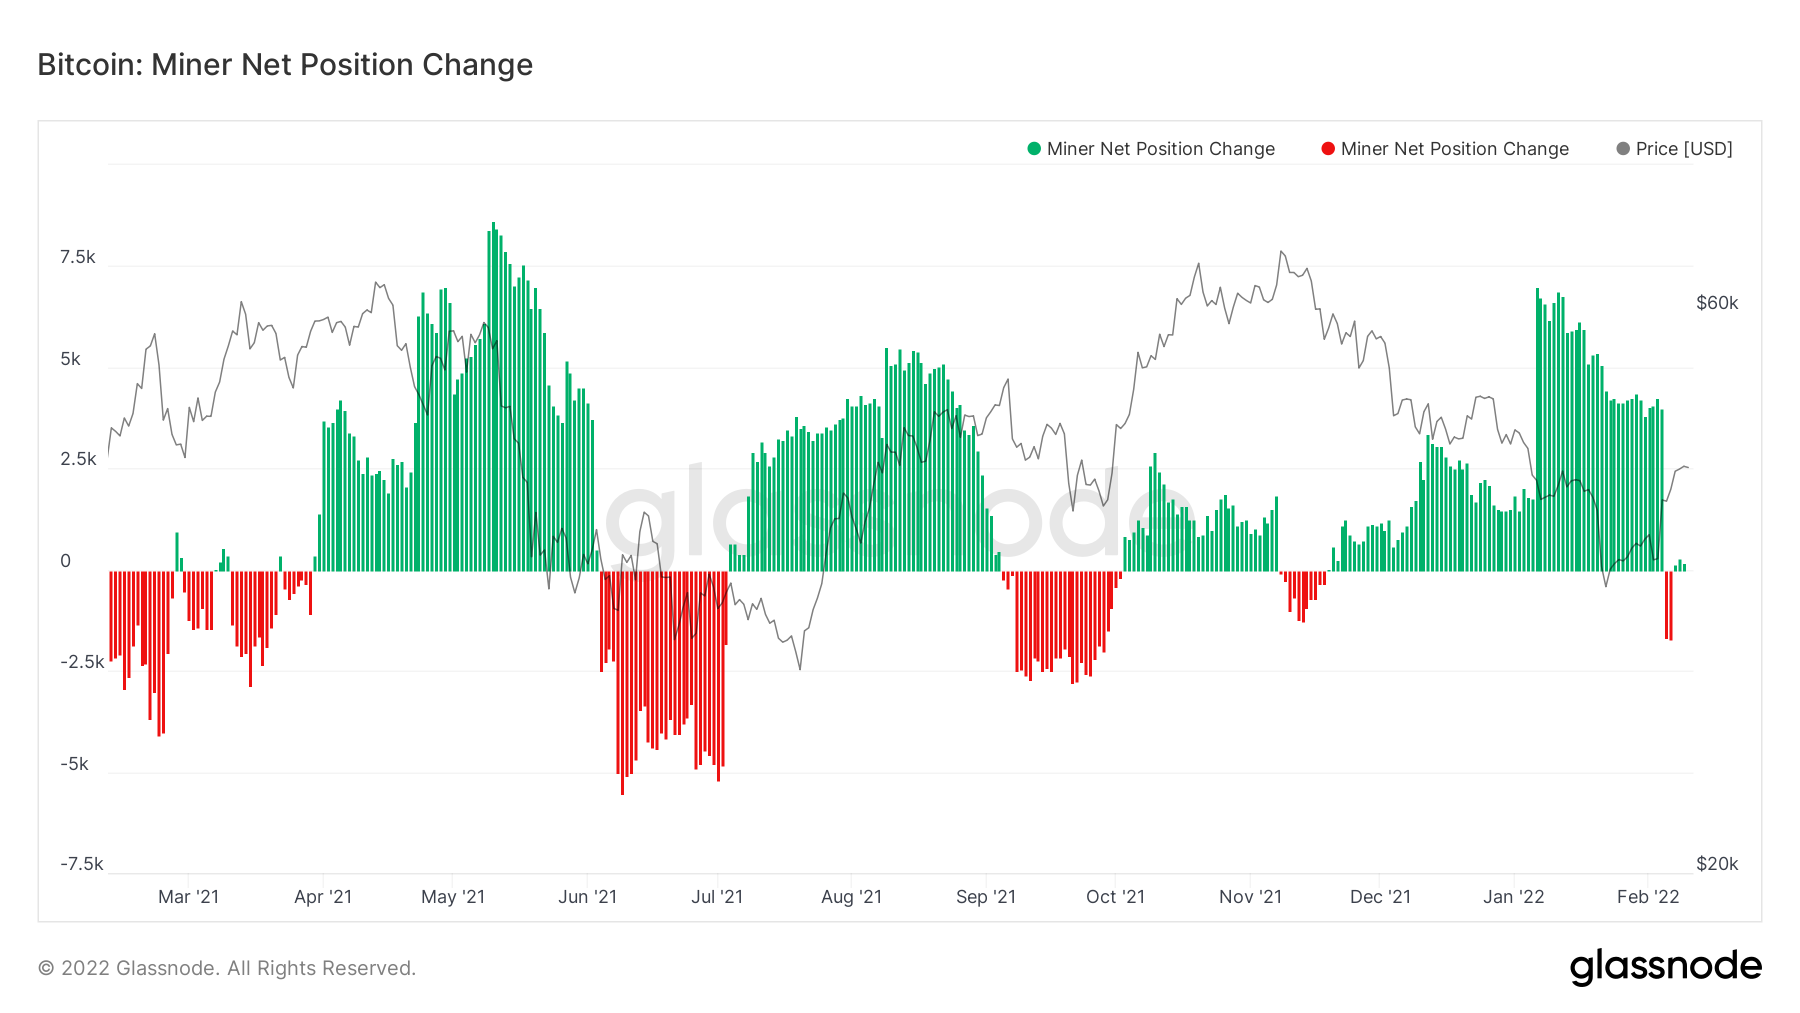 Các thợ mỏ Bitcoin bán cổ phiếu và BTC khi lợi nhuận giảm một nửa kể từ tháng 11